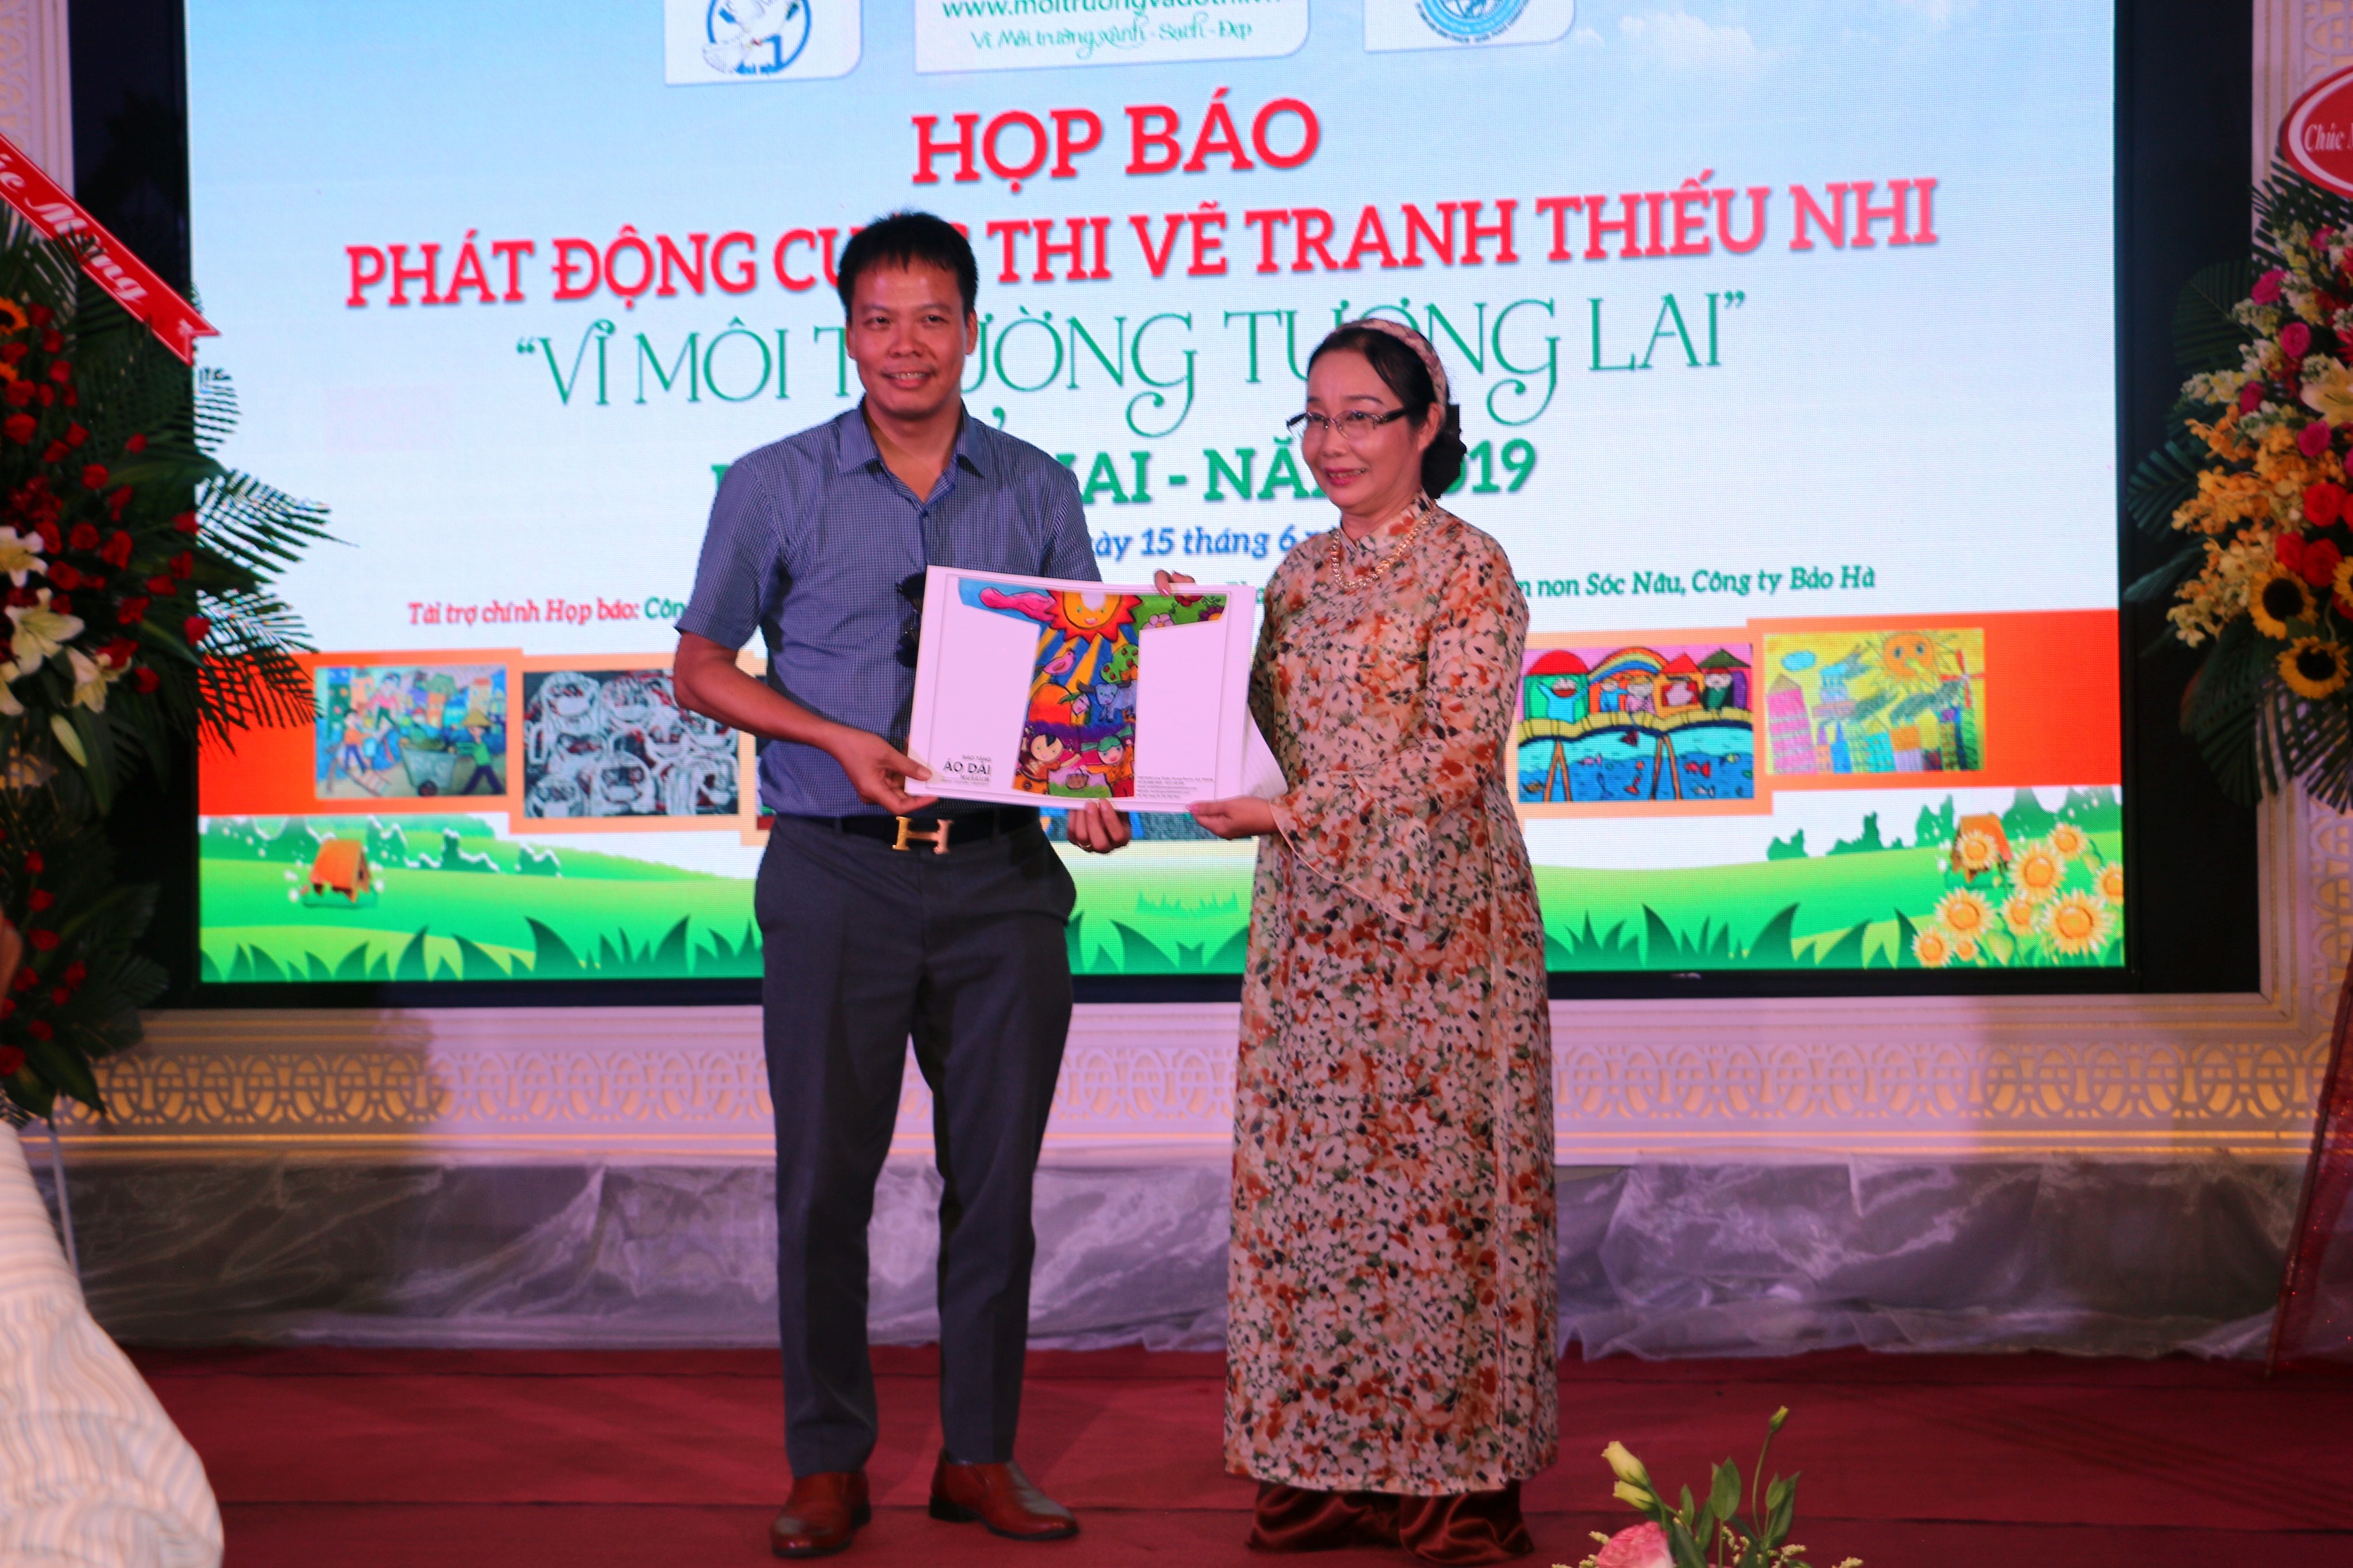 Cuộc thi vẽ tranh thiếu nhi “Vì môi trường tương lai”: Sân chơi bổ ích cho thiếu nhi Việt Nam